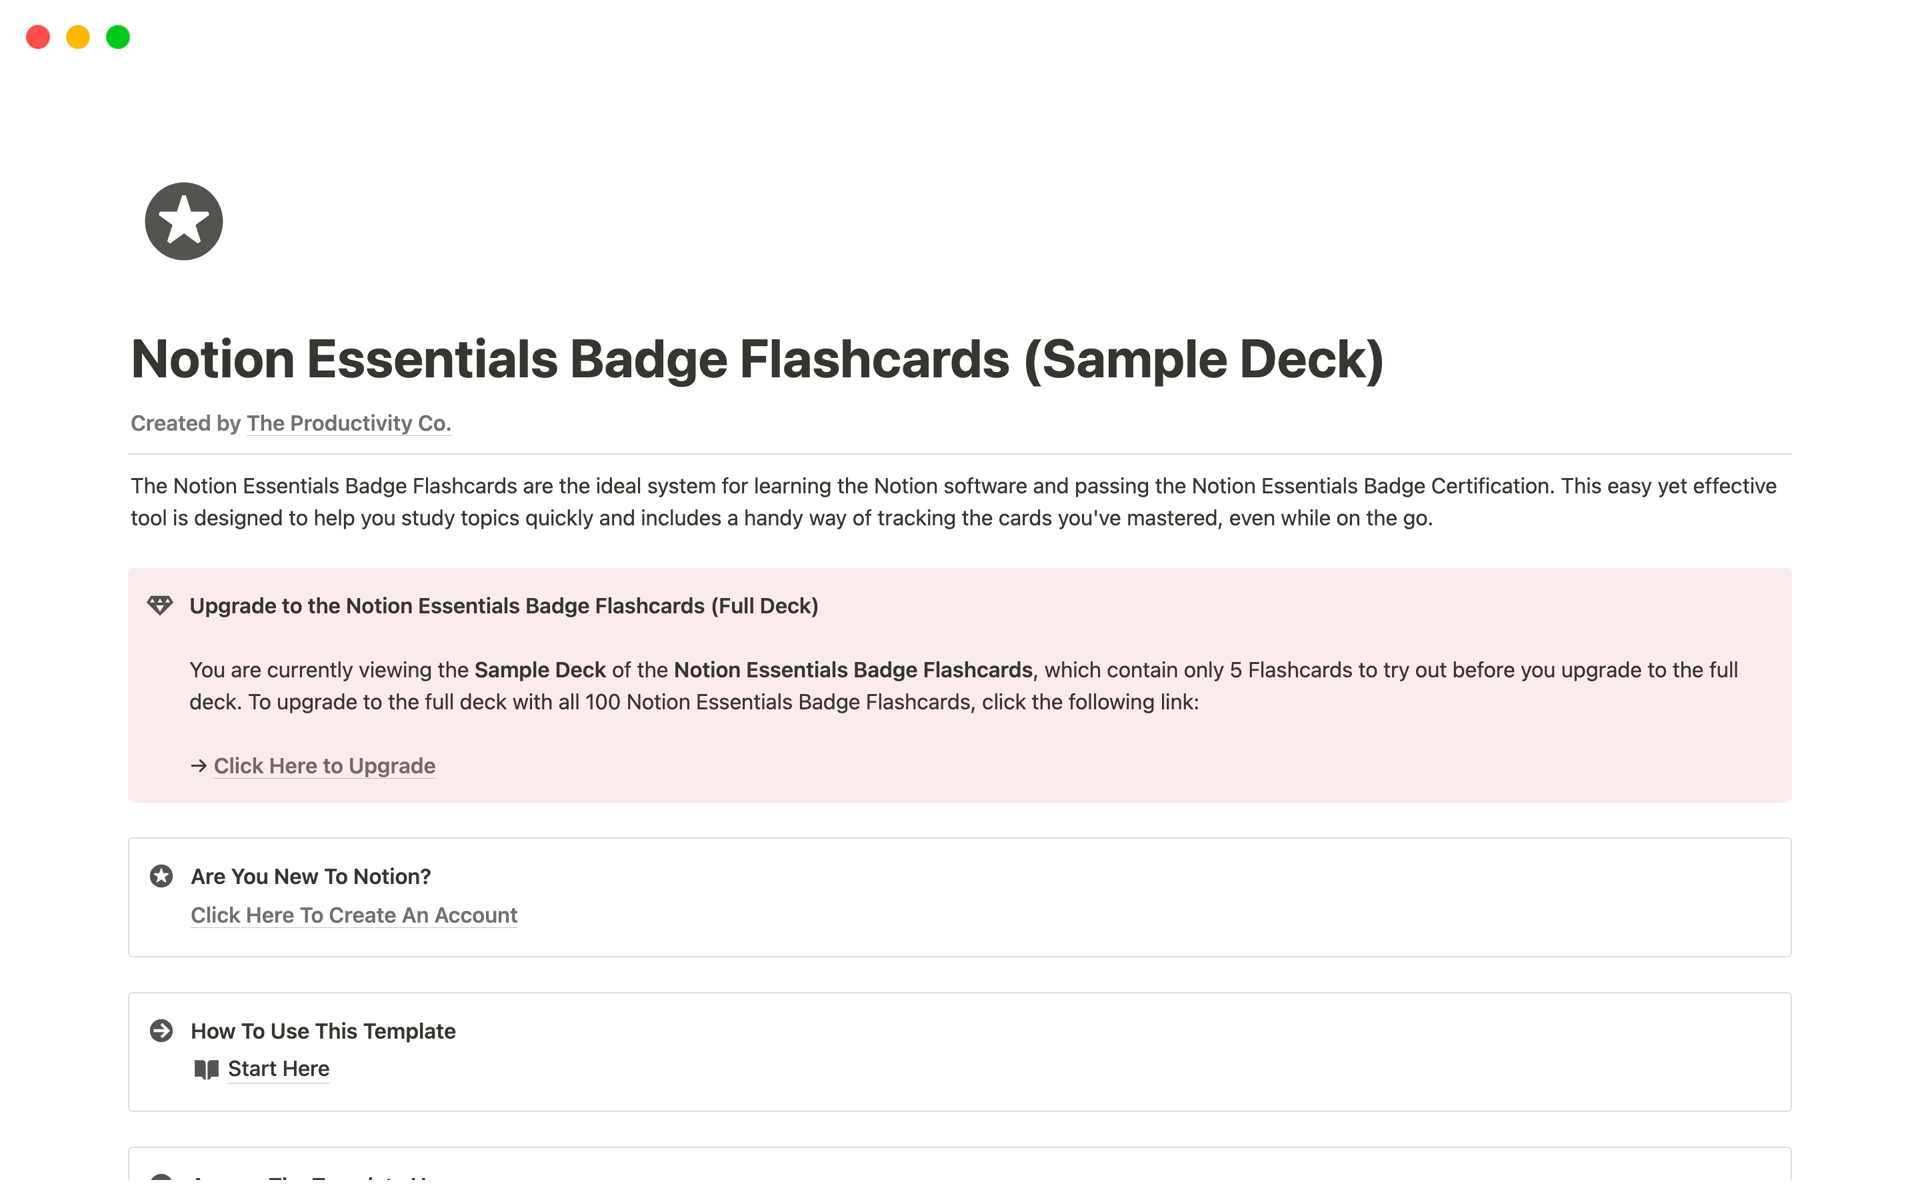 En förhandsgranskning av mallen för Notion Essentials Badge Flashcards